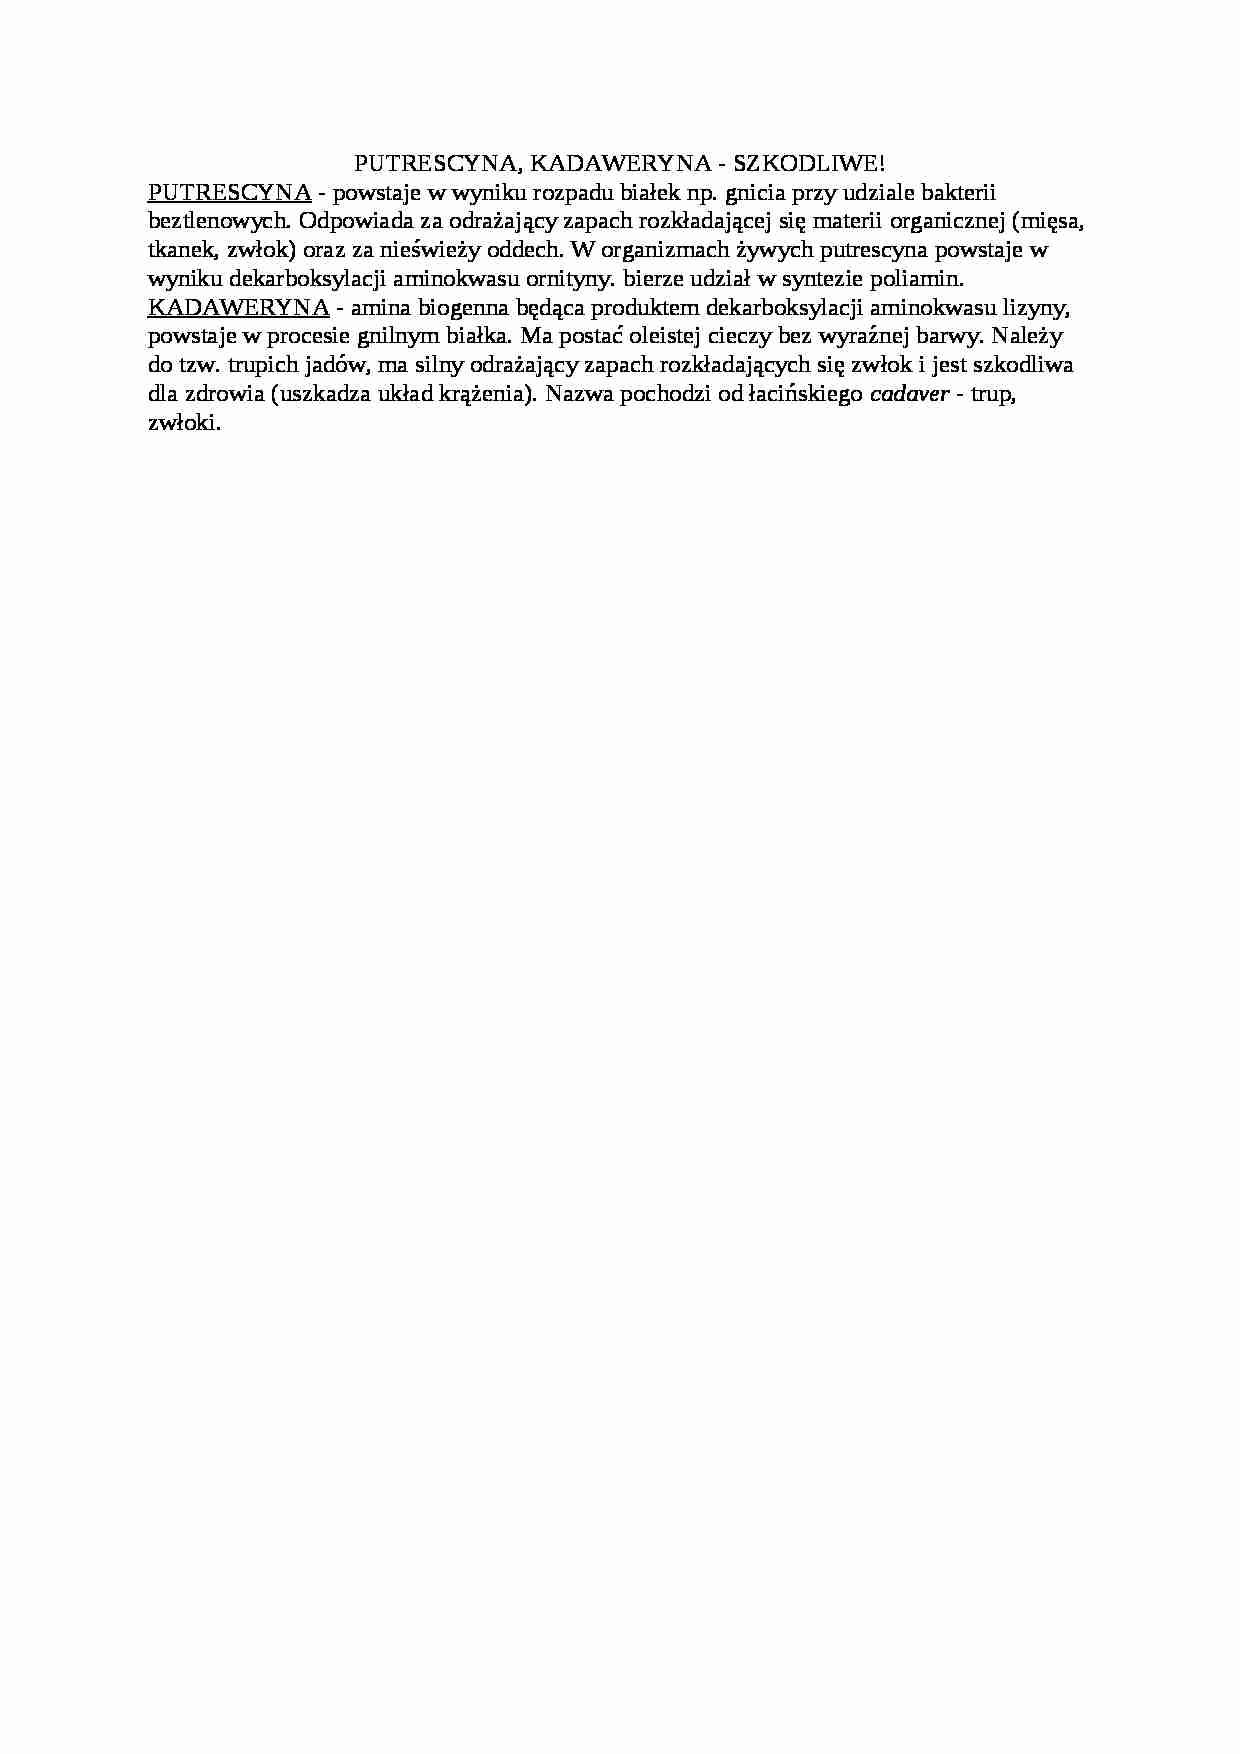 Trawienie poligastryczne- putrescyna, kadaweryna - opracowanie, sem IV - strona 1